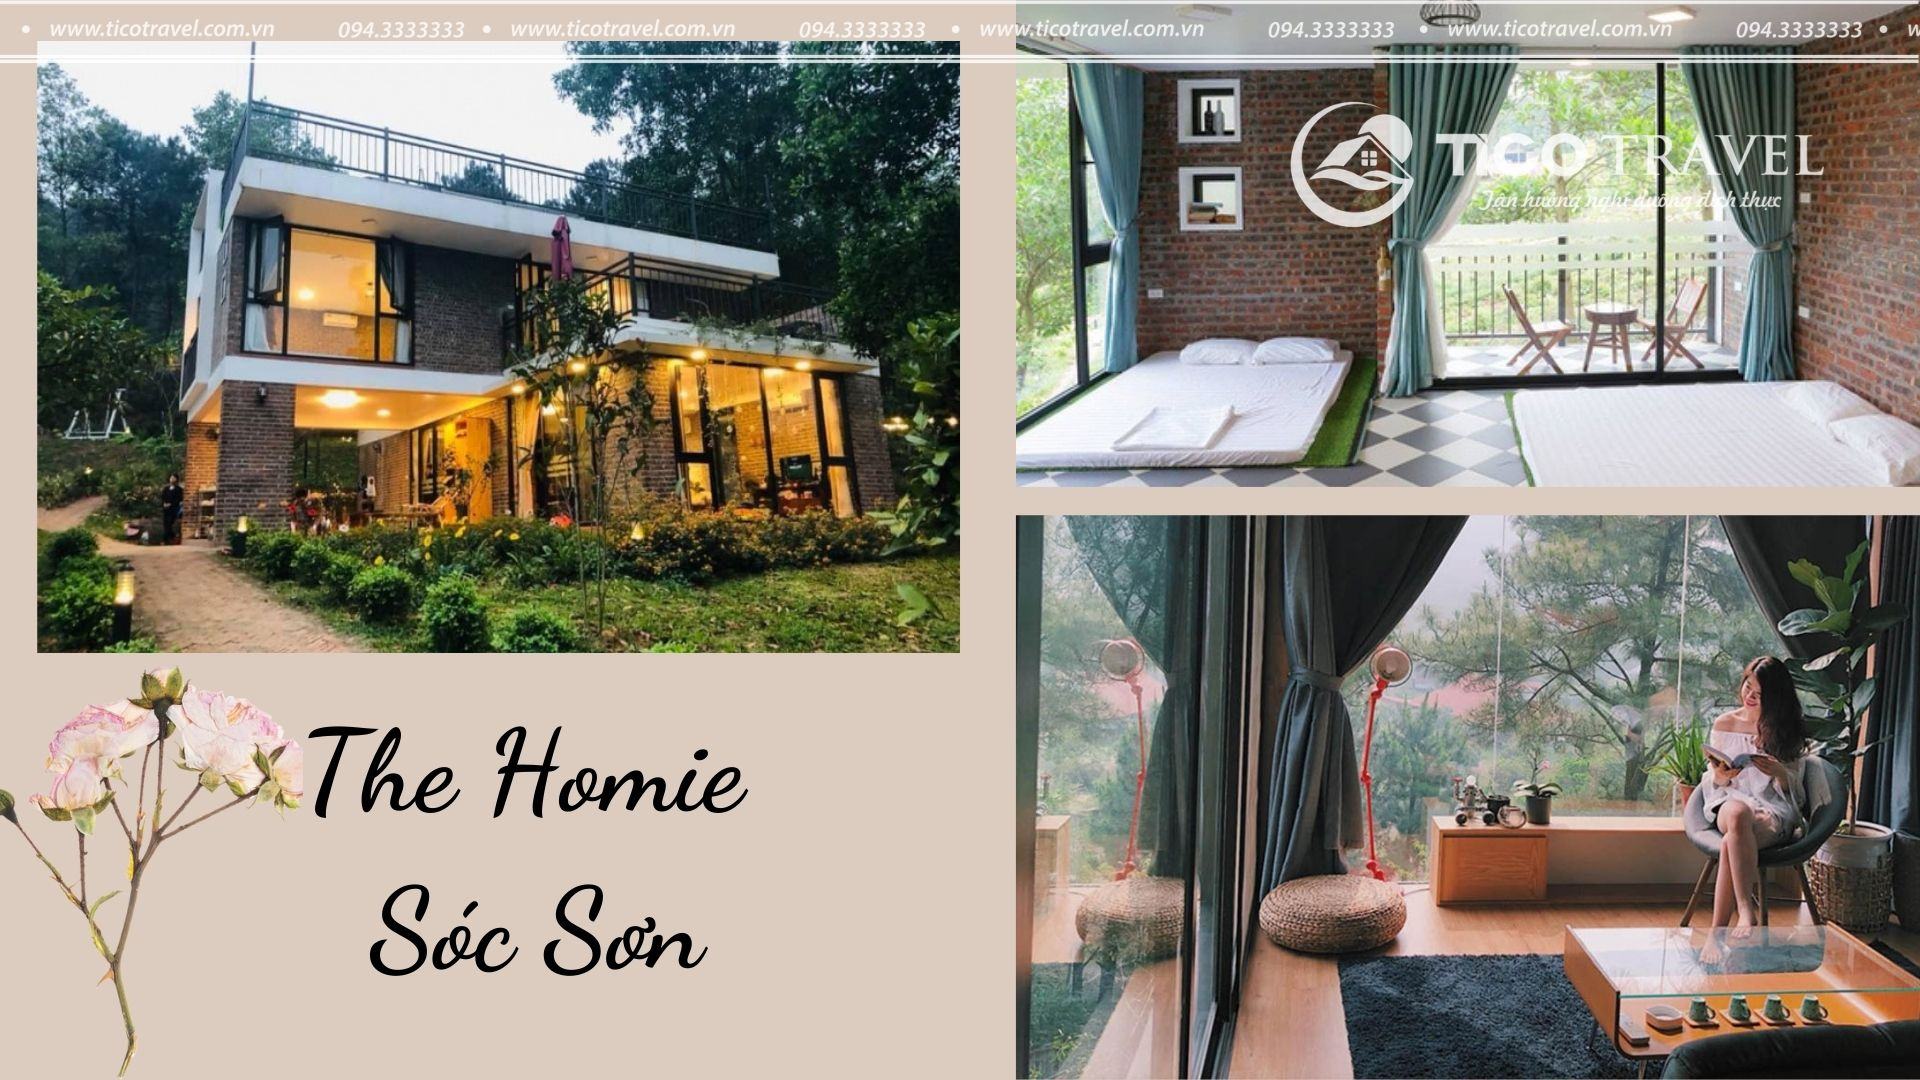 ảnh chụp The Homie resort Sóc Sơn